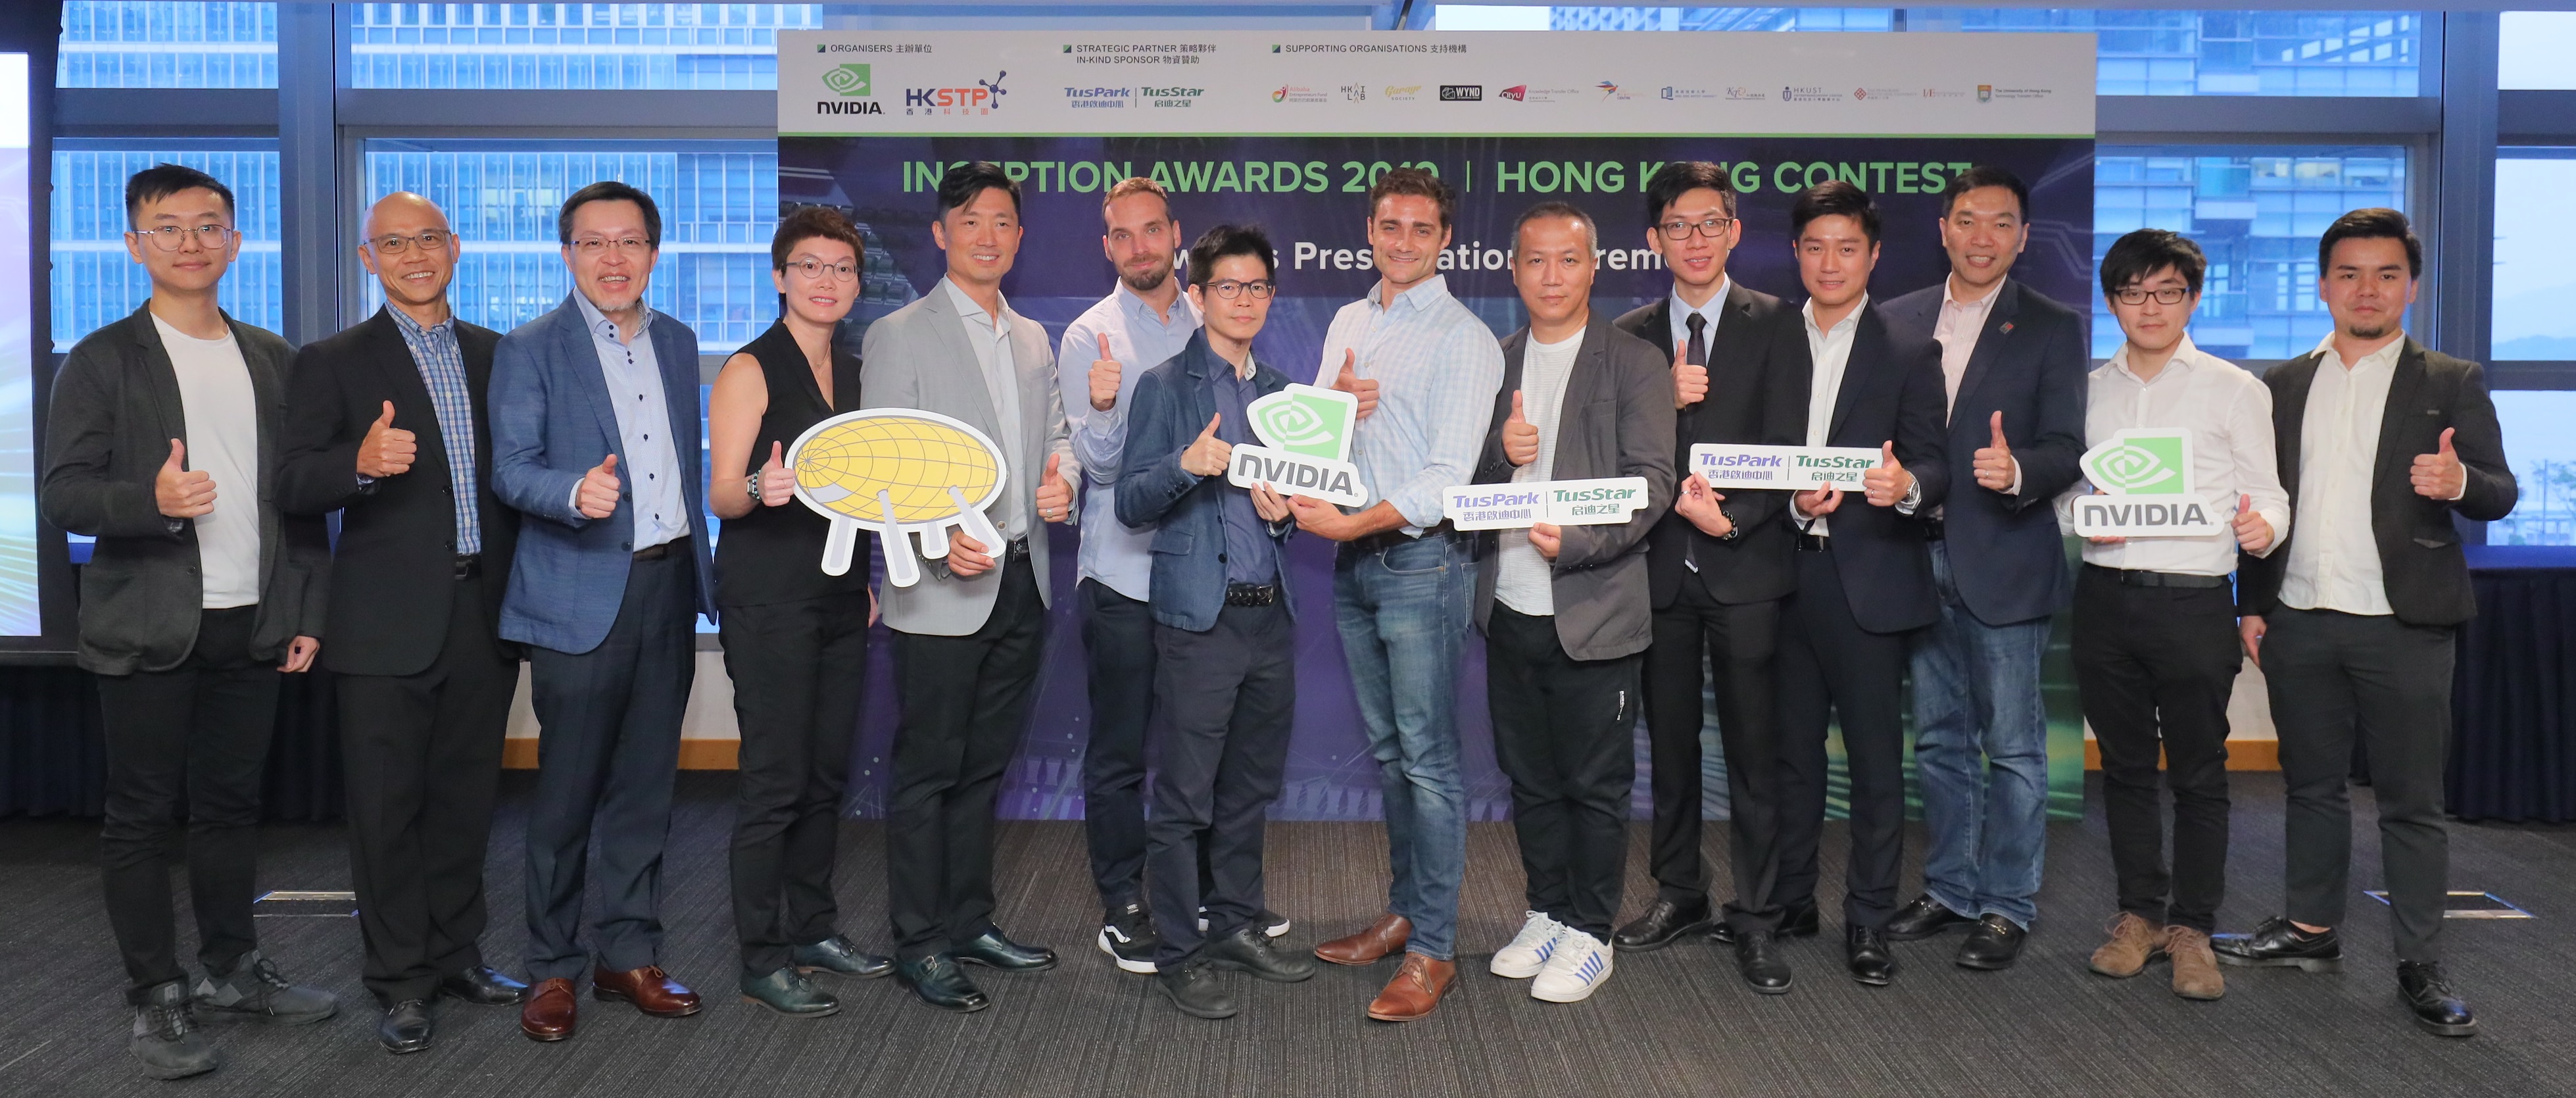 初創企業大賽2019香港分賽評審恭賀勝出的五間人工智能初創企業。